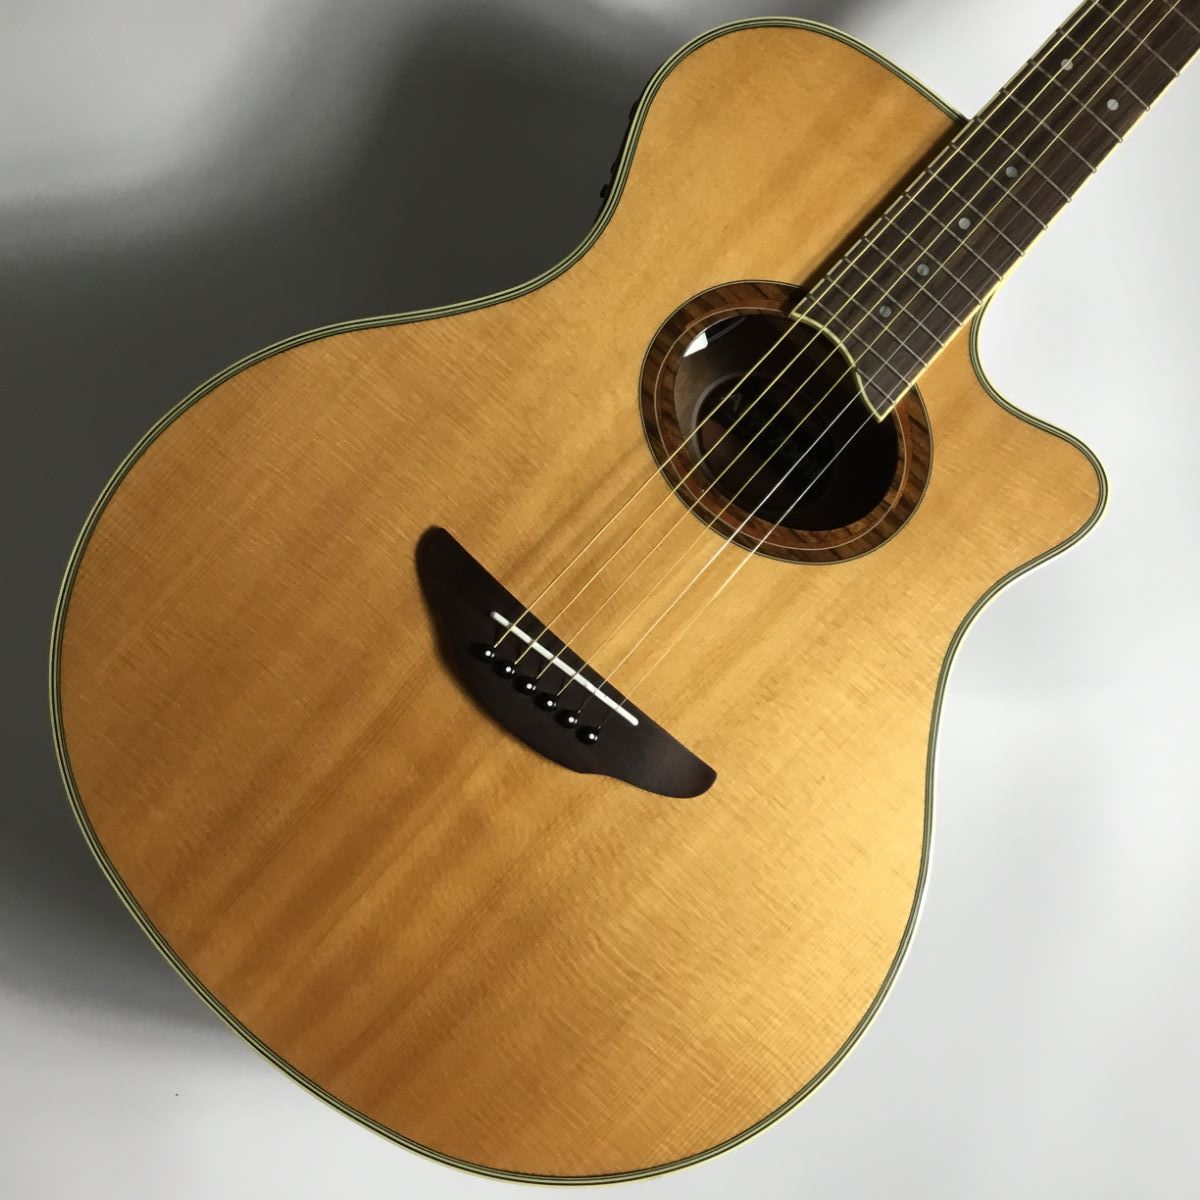 YAMAHA APX700Ⅱ　エレクトリックアコースティックギター